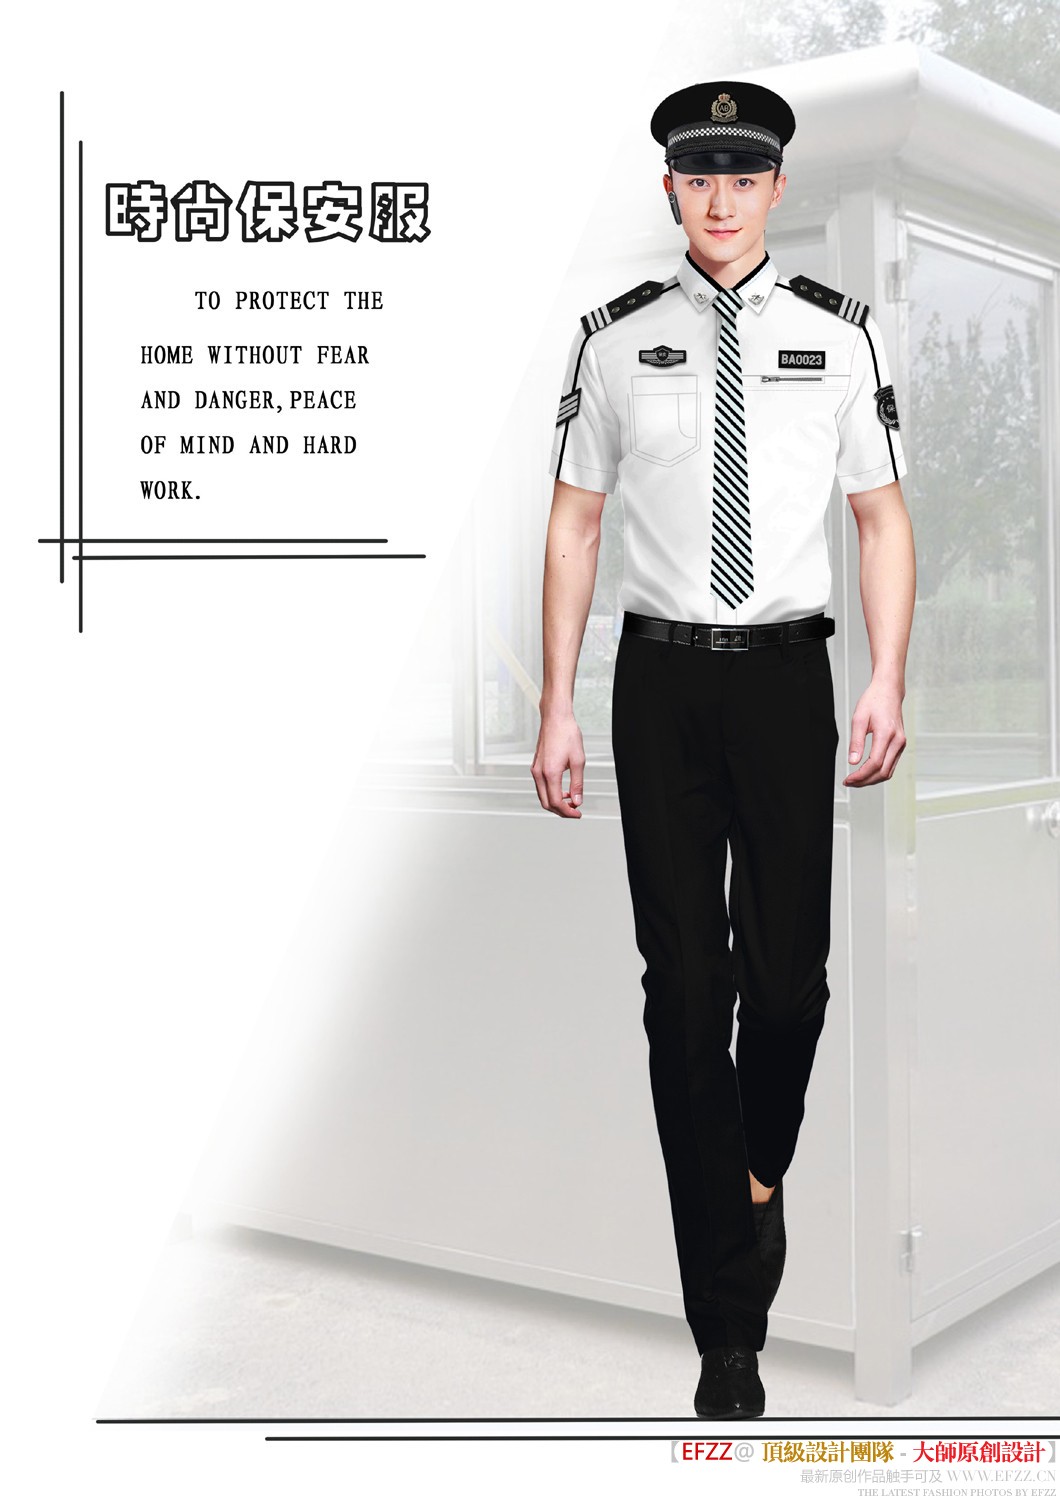 新款短袖保安服款式设计图430